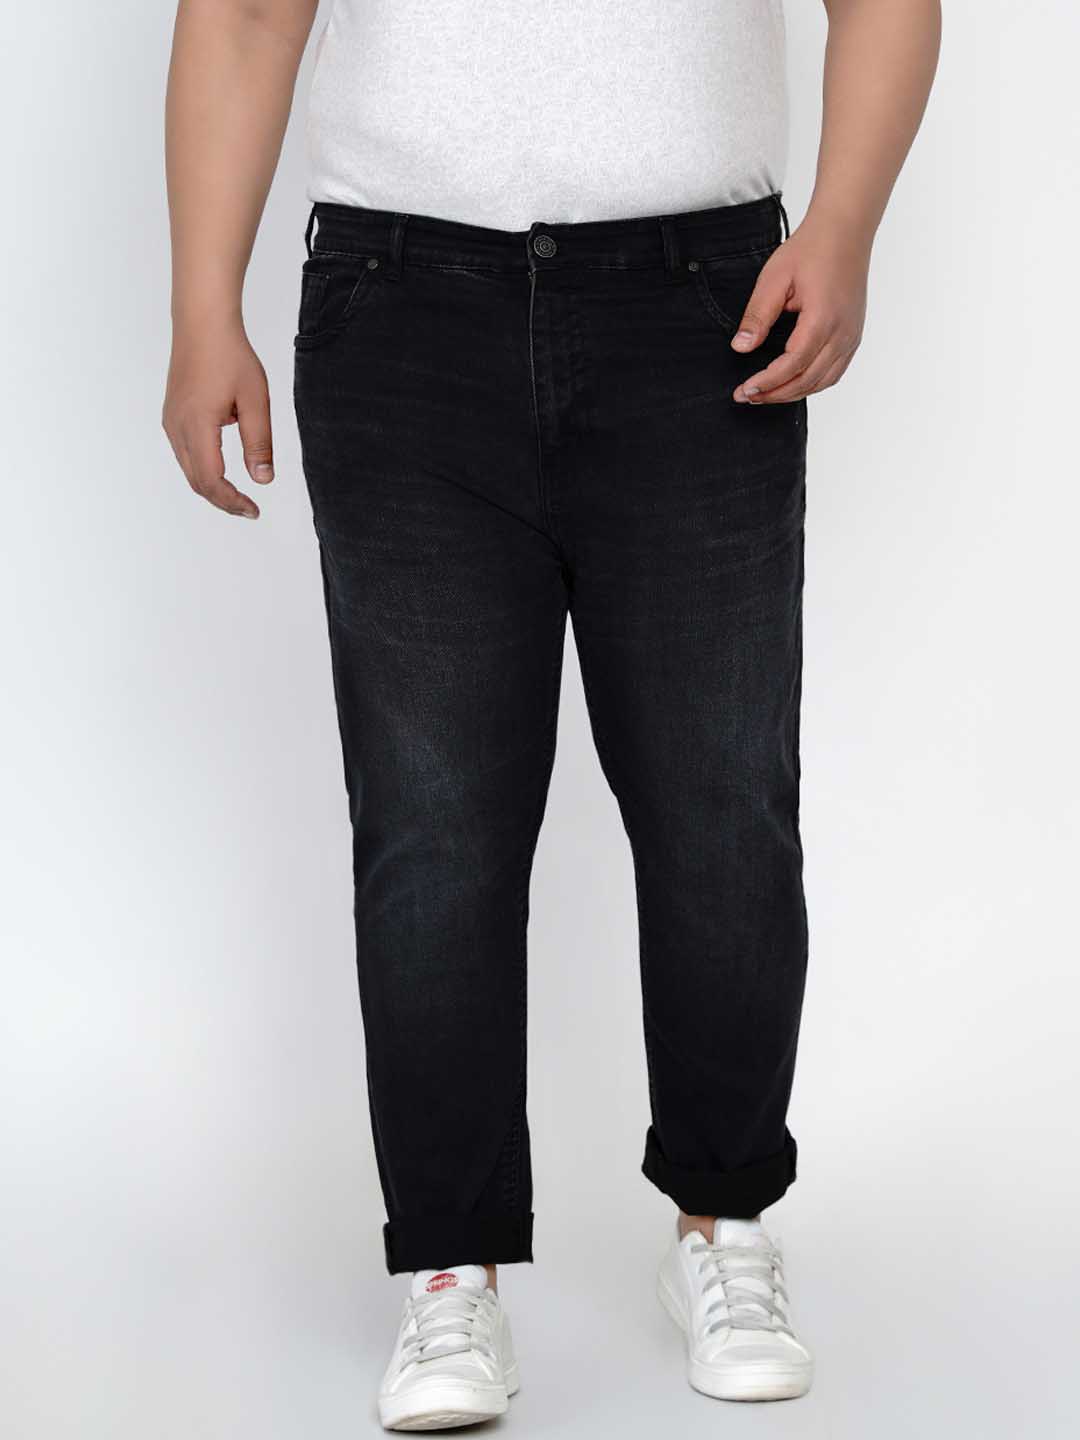 bottomwear/jeans/JPJ12136/jpj12136-4.jpg